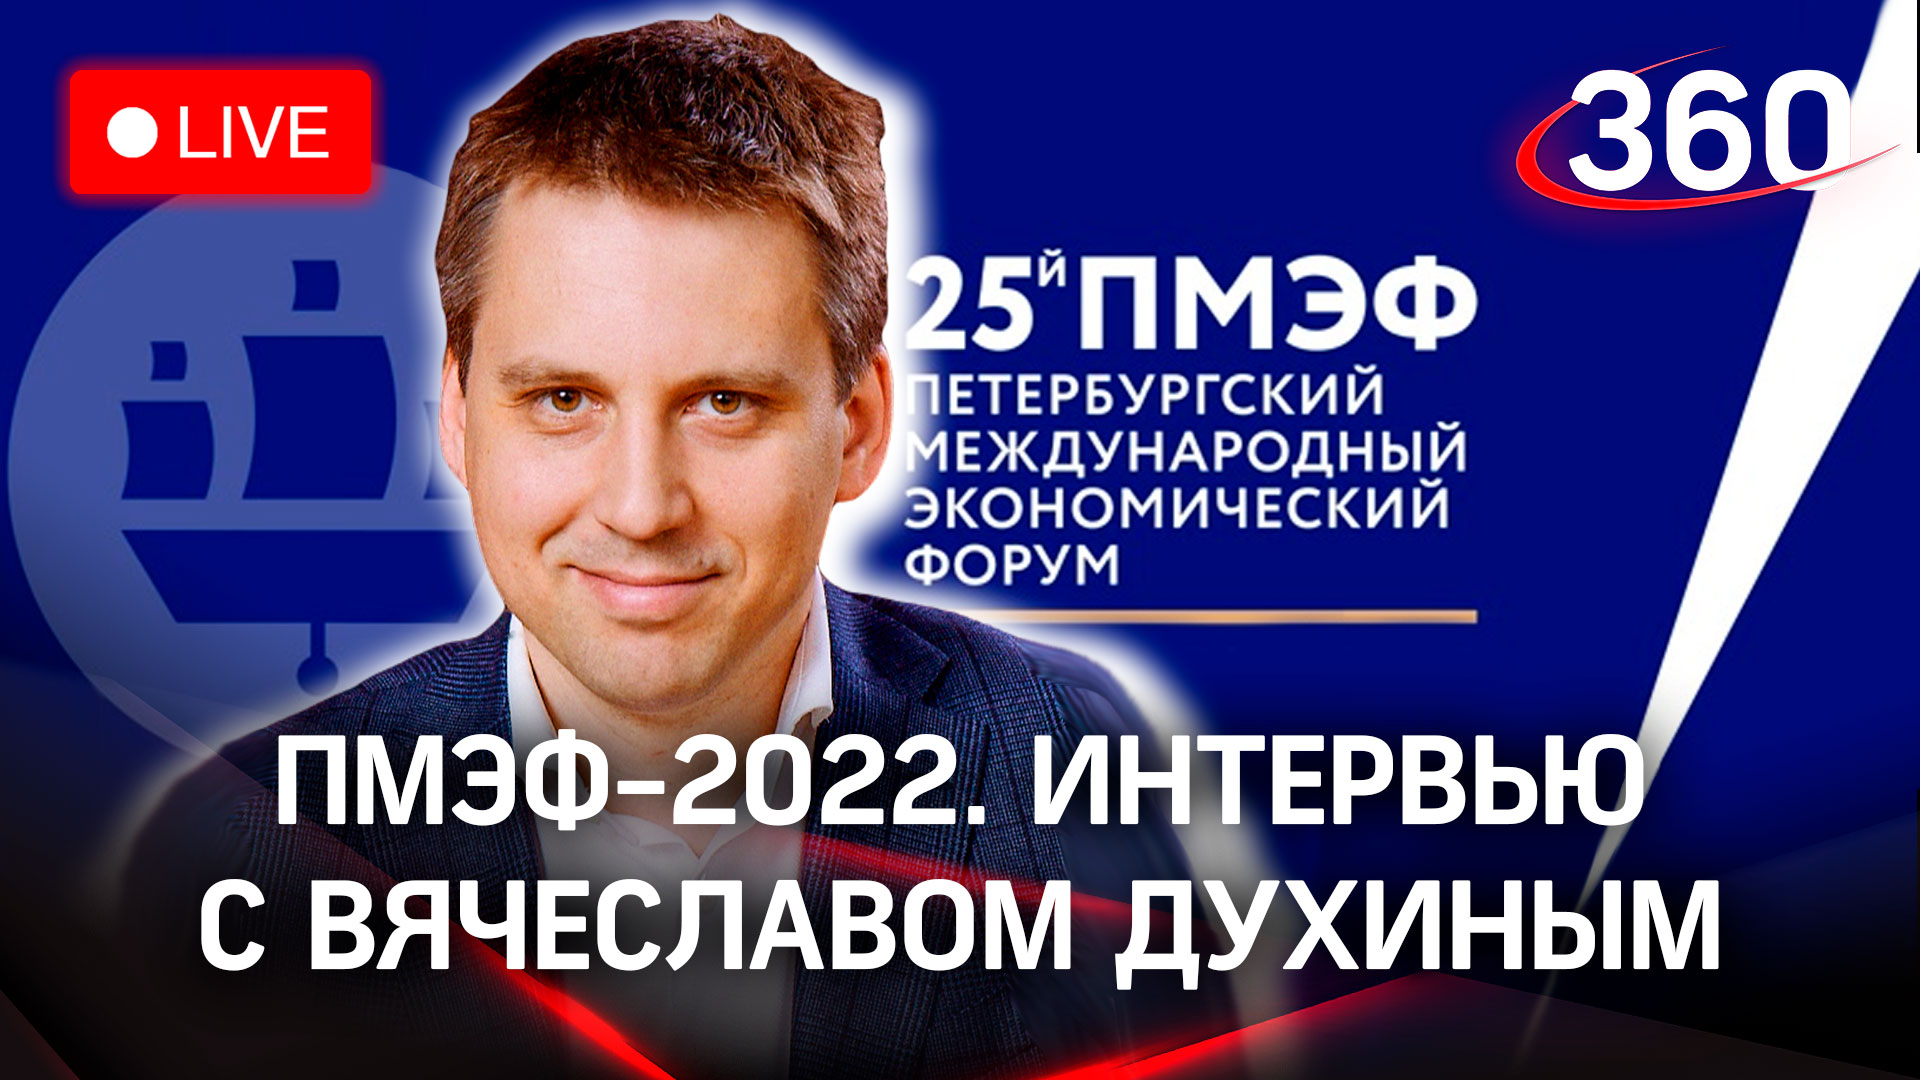 ПМЭФ-2022: интервью с Вячеславом Духиным, заместителем Председателя Правительства Московской области